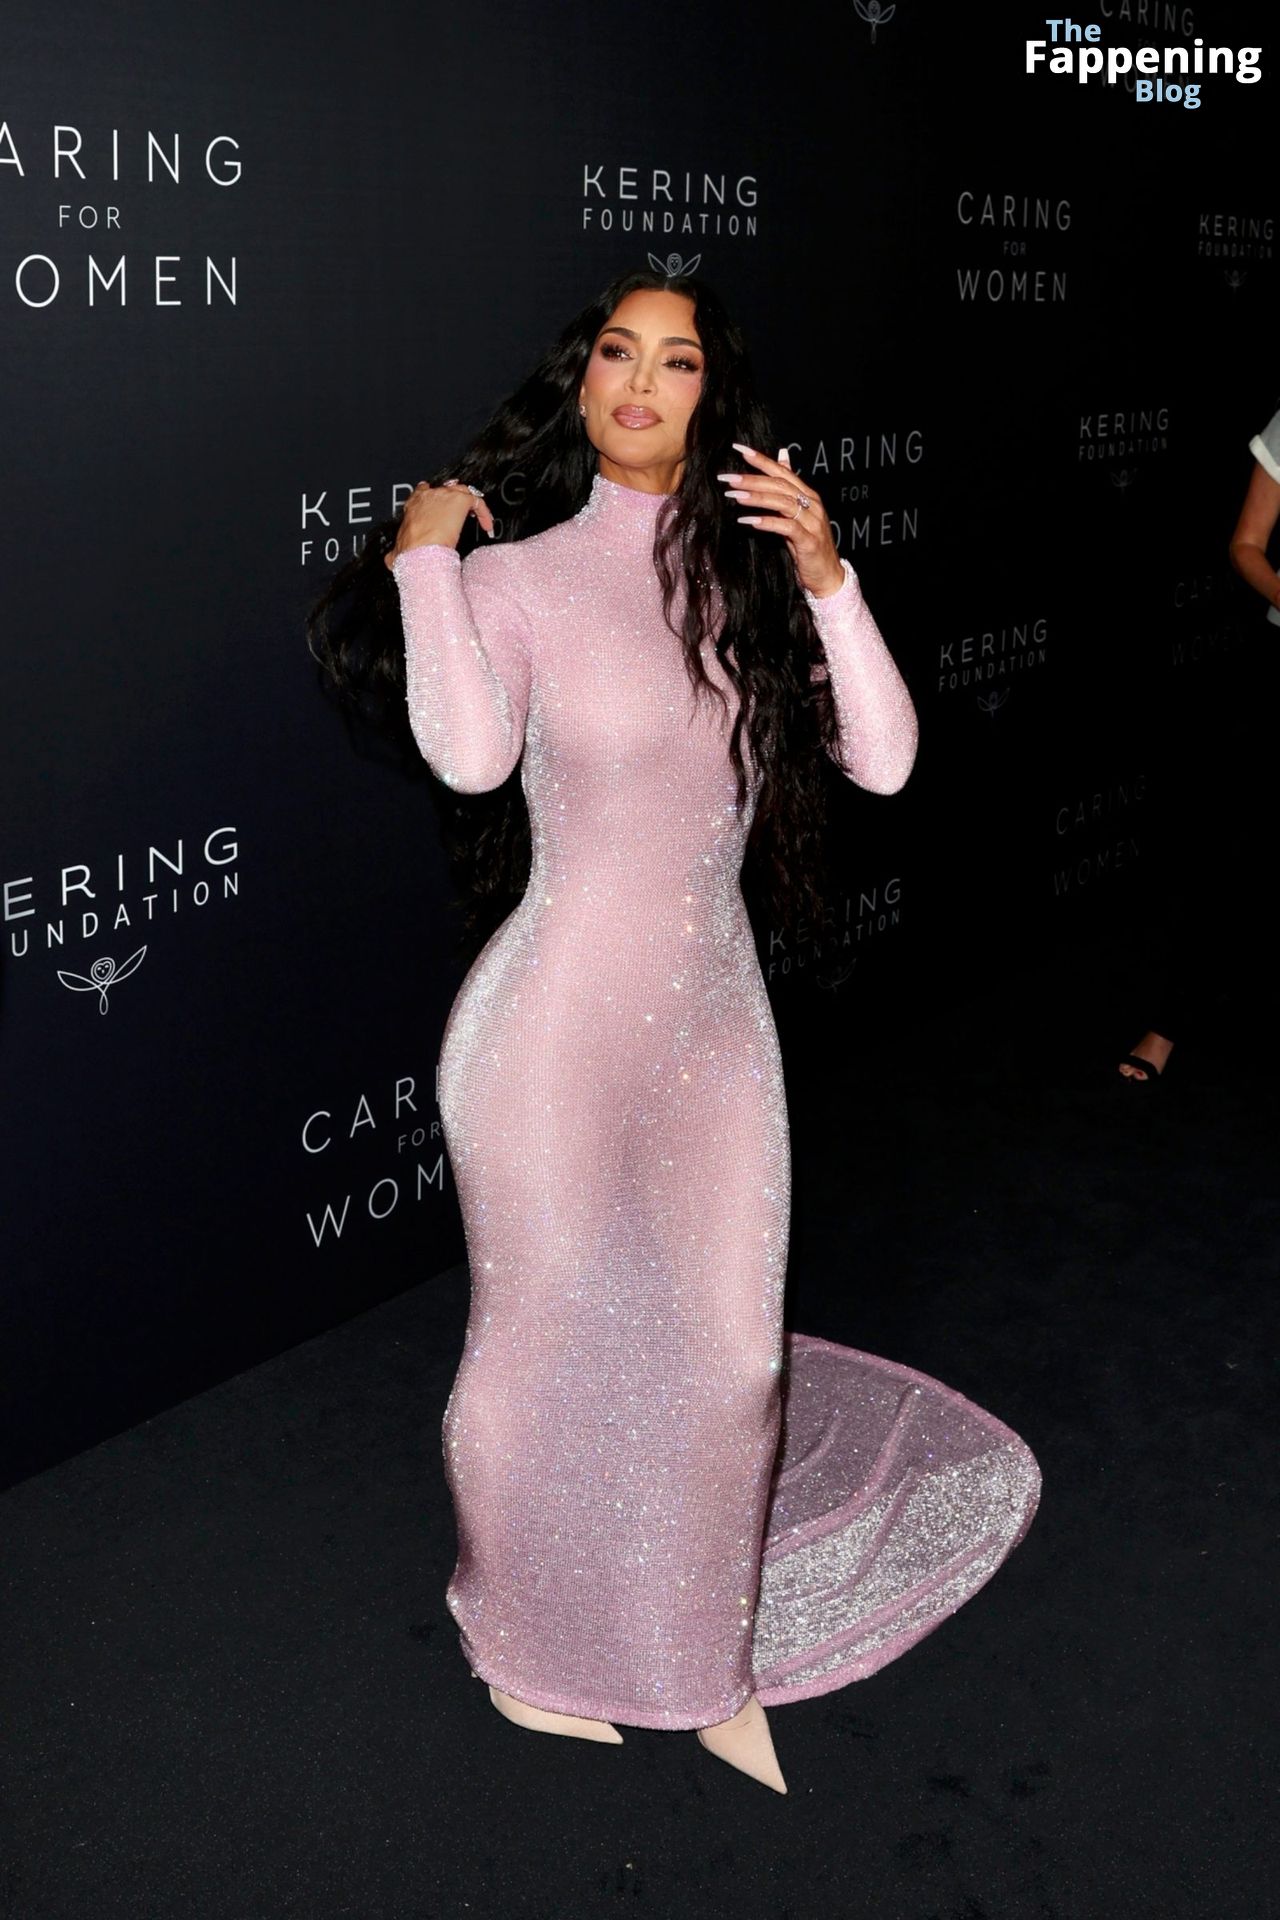 Kim-Kardashian-Sexy-70-The-Fappening-Blog.jpg